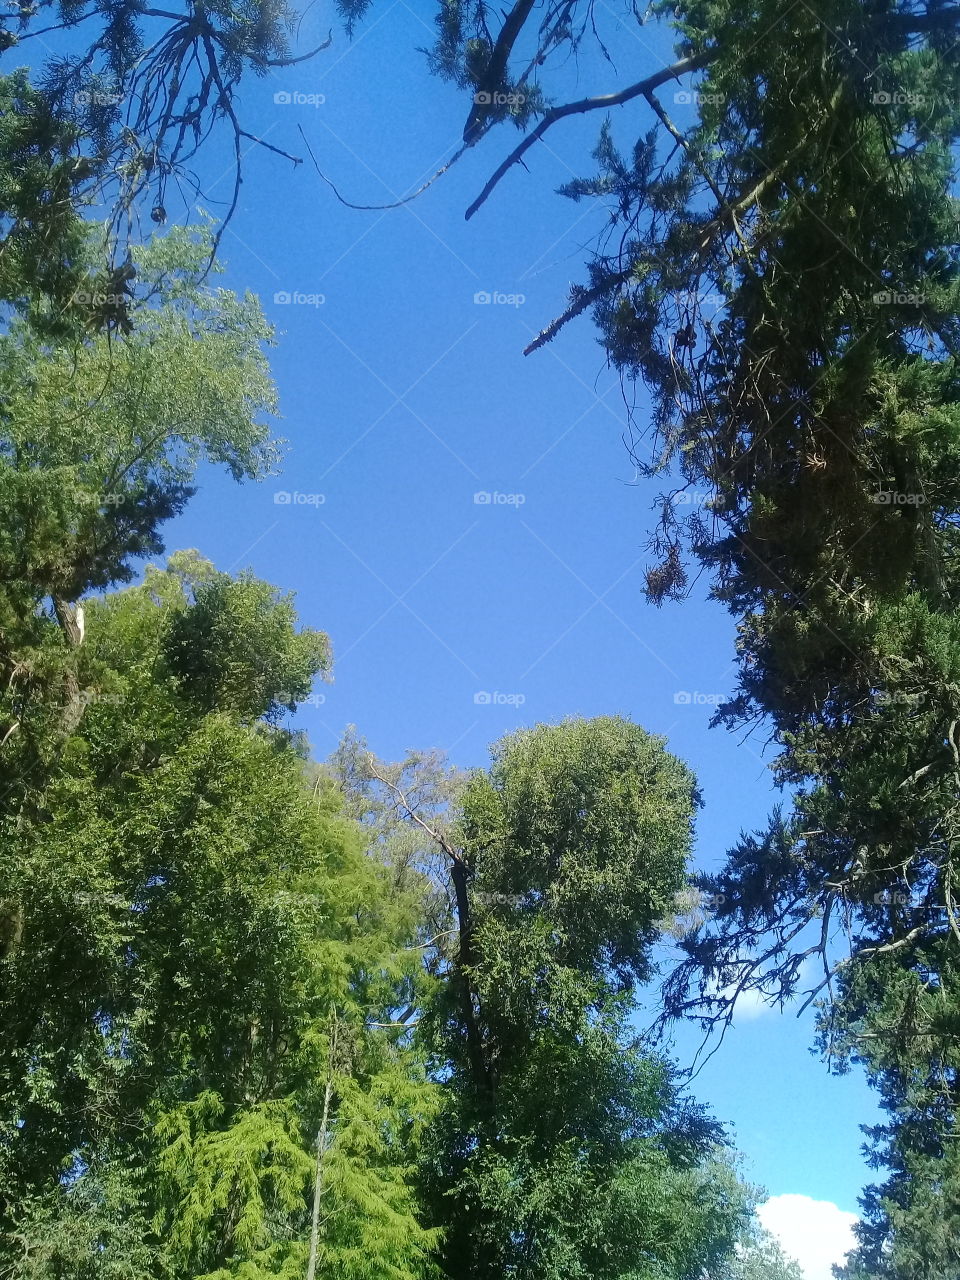 cielo azul de verano asomando entre las copas de árboles con una pequeña nube avanzando hacia el centro